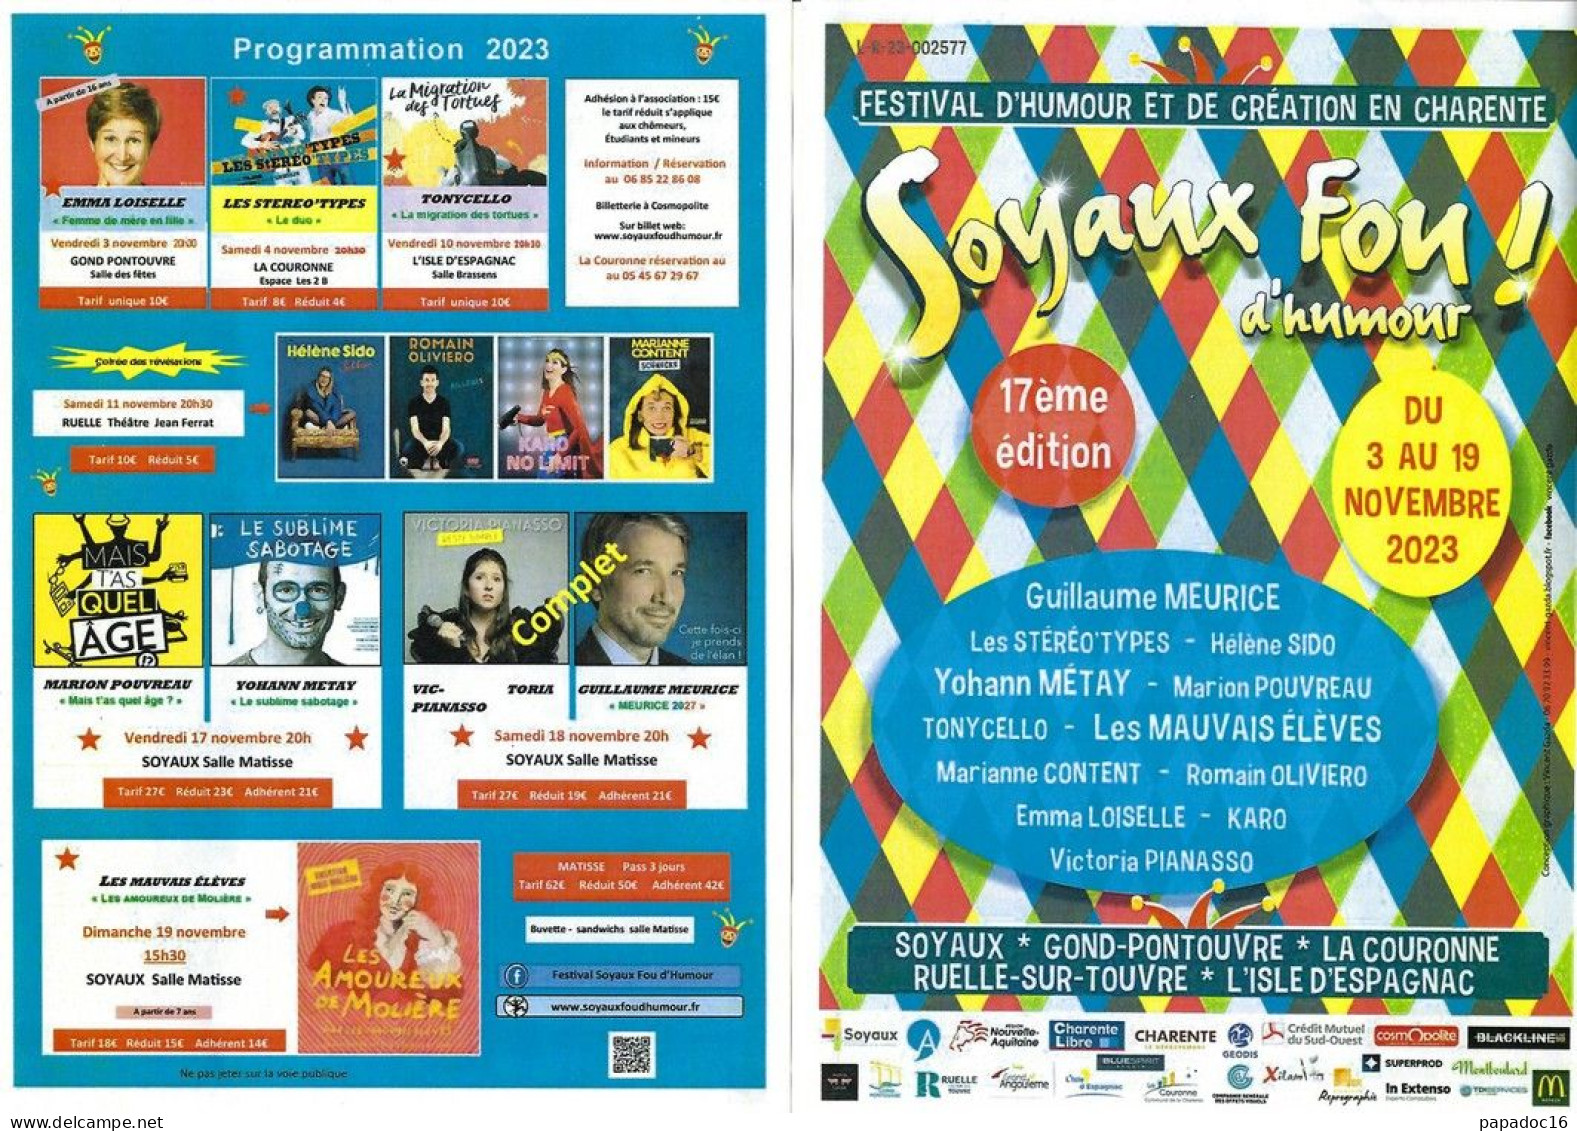 Flyer - Soyaux Fou D'humour ! - 17e Festival D'humour Et De Création En Charente - 3-19 Novembre 2023 - Publicidad